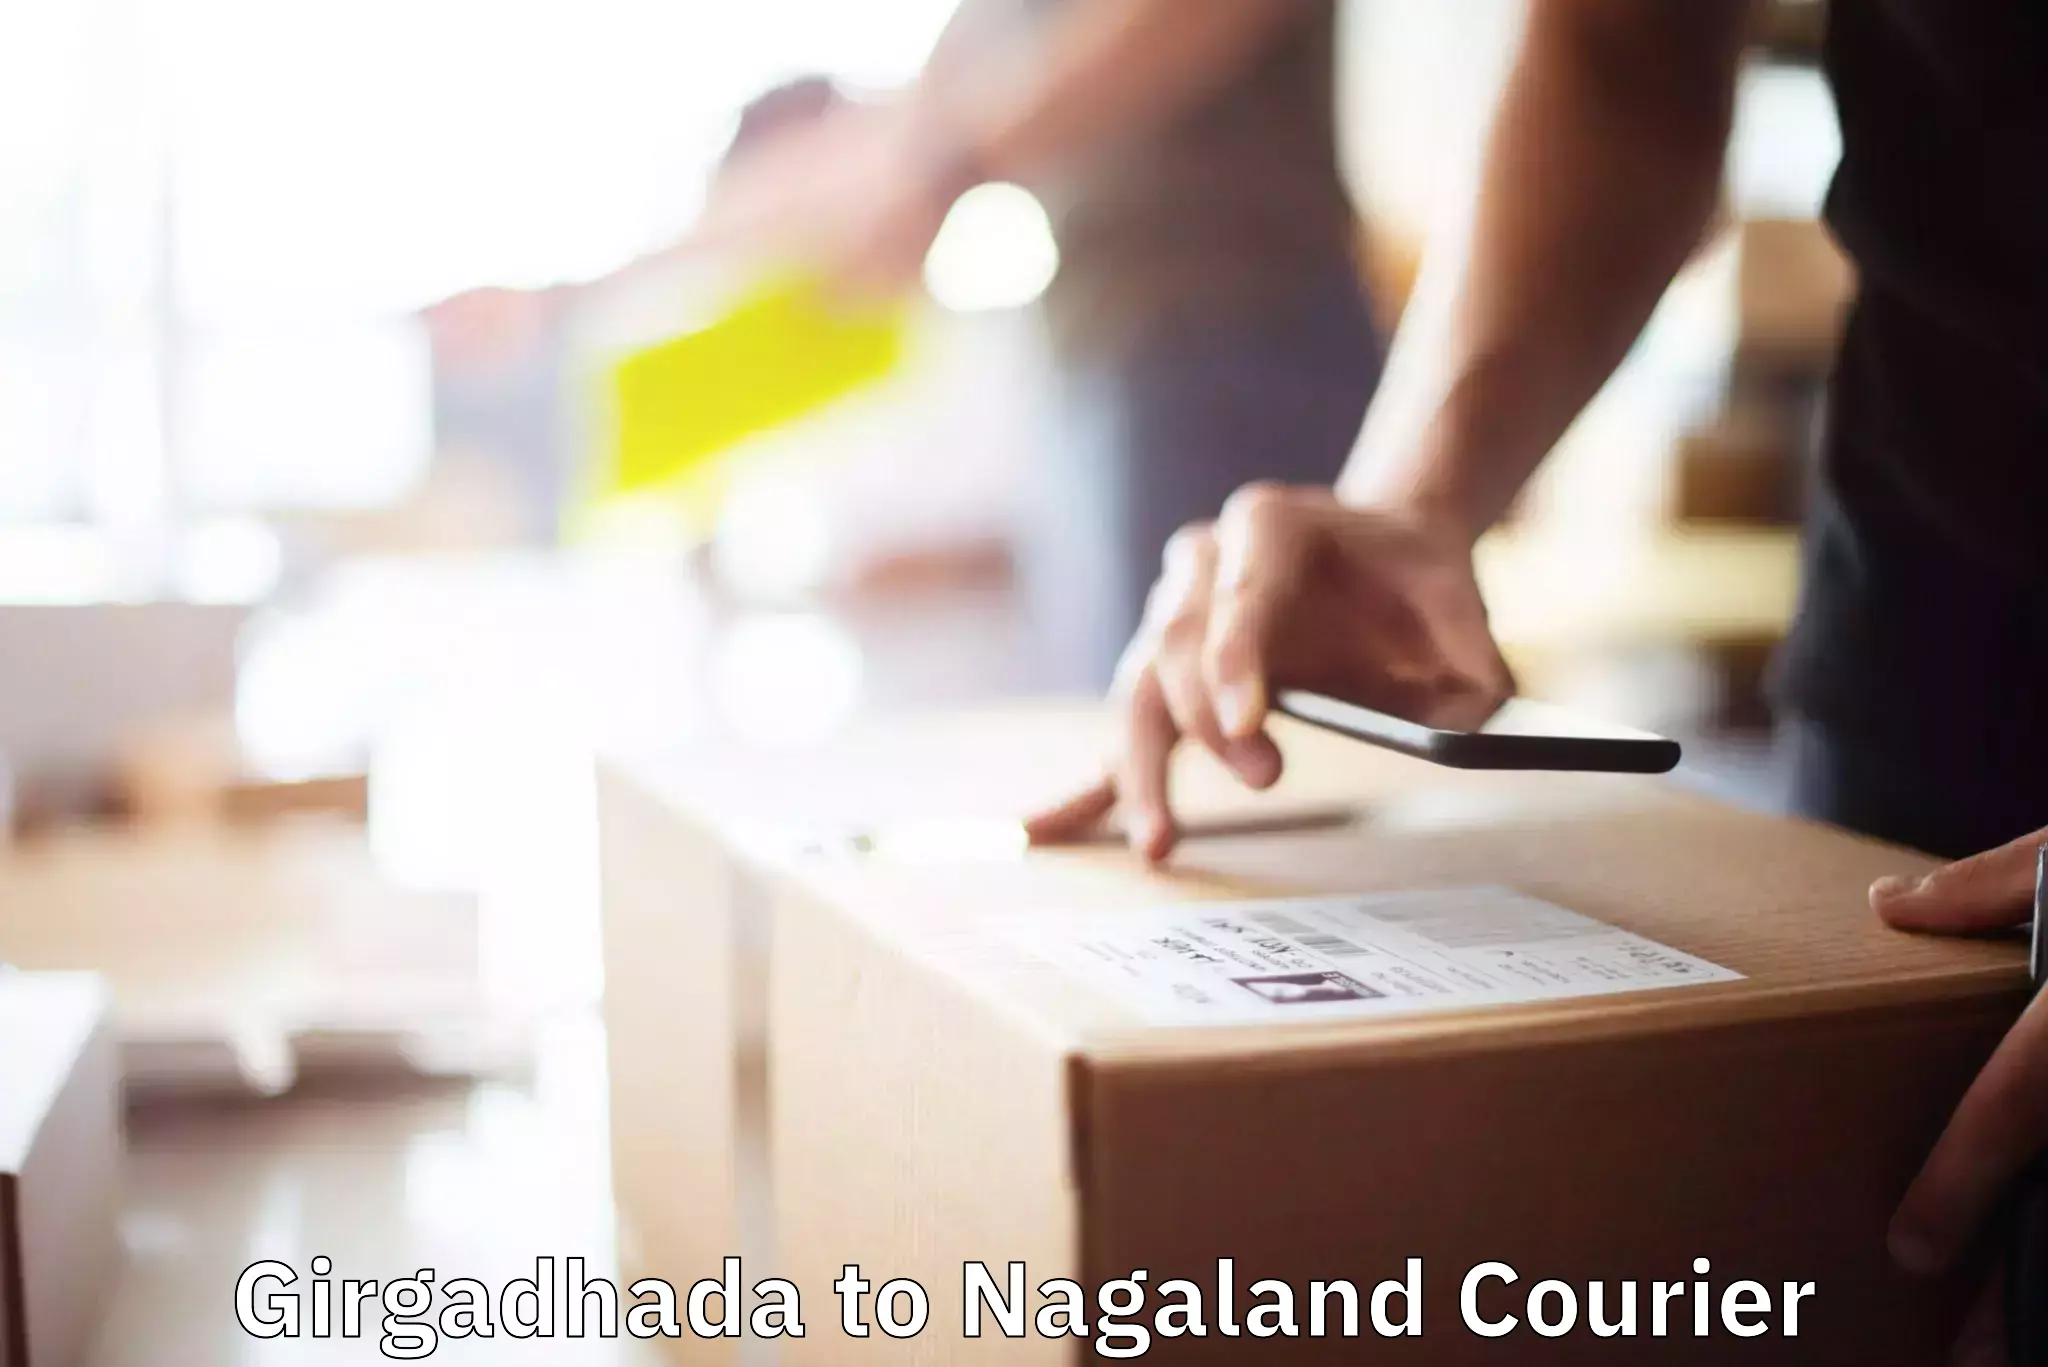 Quality household movers Girgadhada to NIT Nagaland